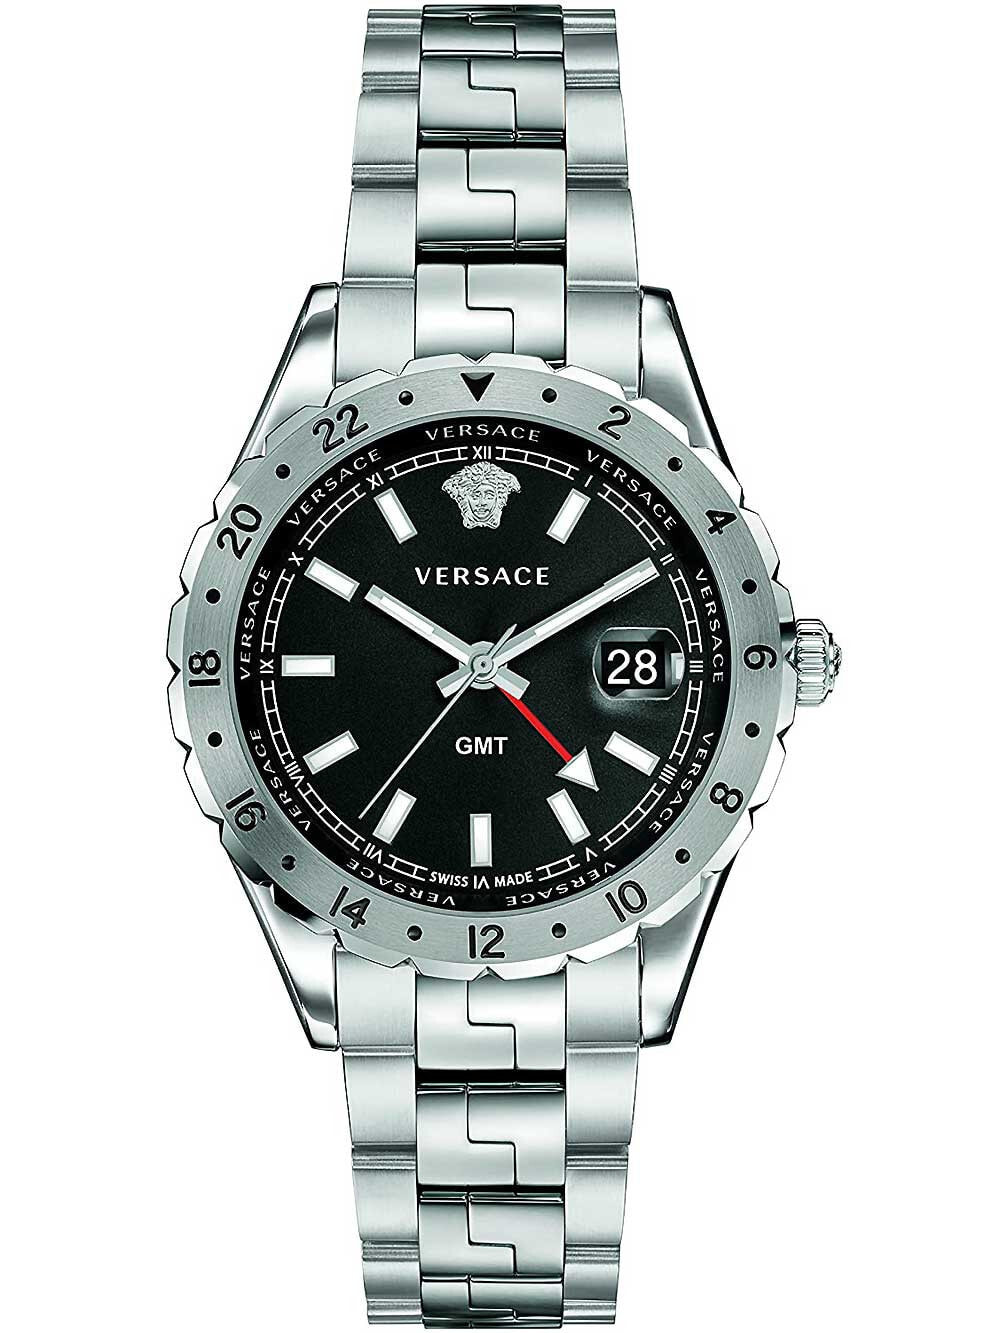 Мужские наручные часы с серебряным браслетом Versace V11020015 Hellenyium GMT mens 42mm 5ATM